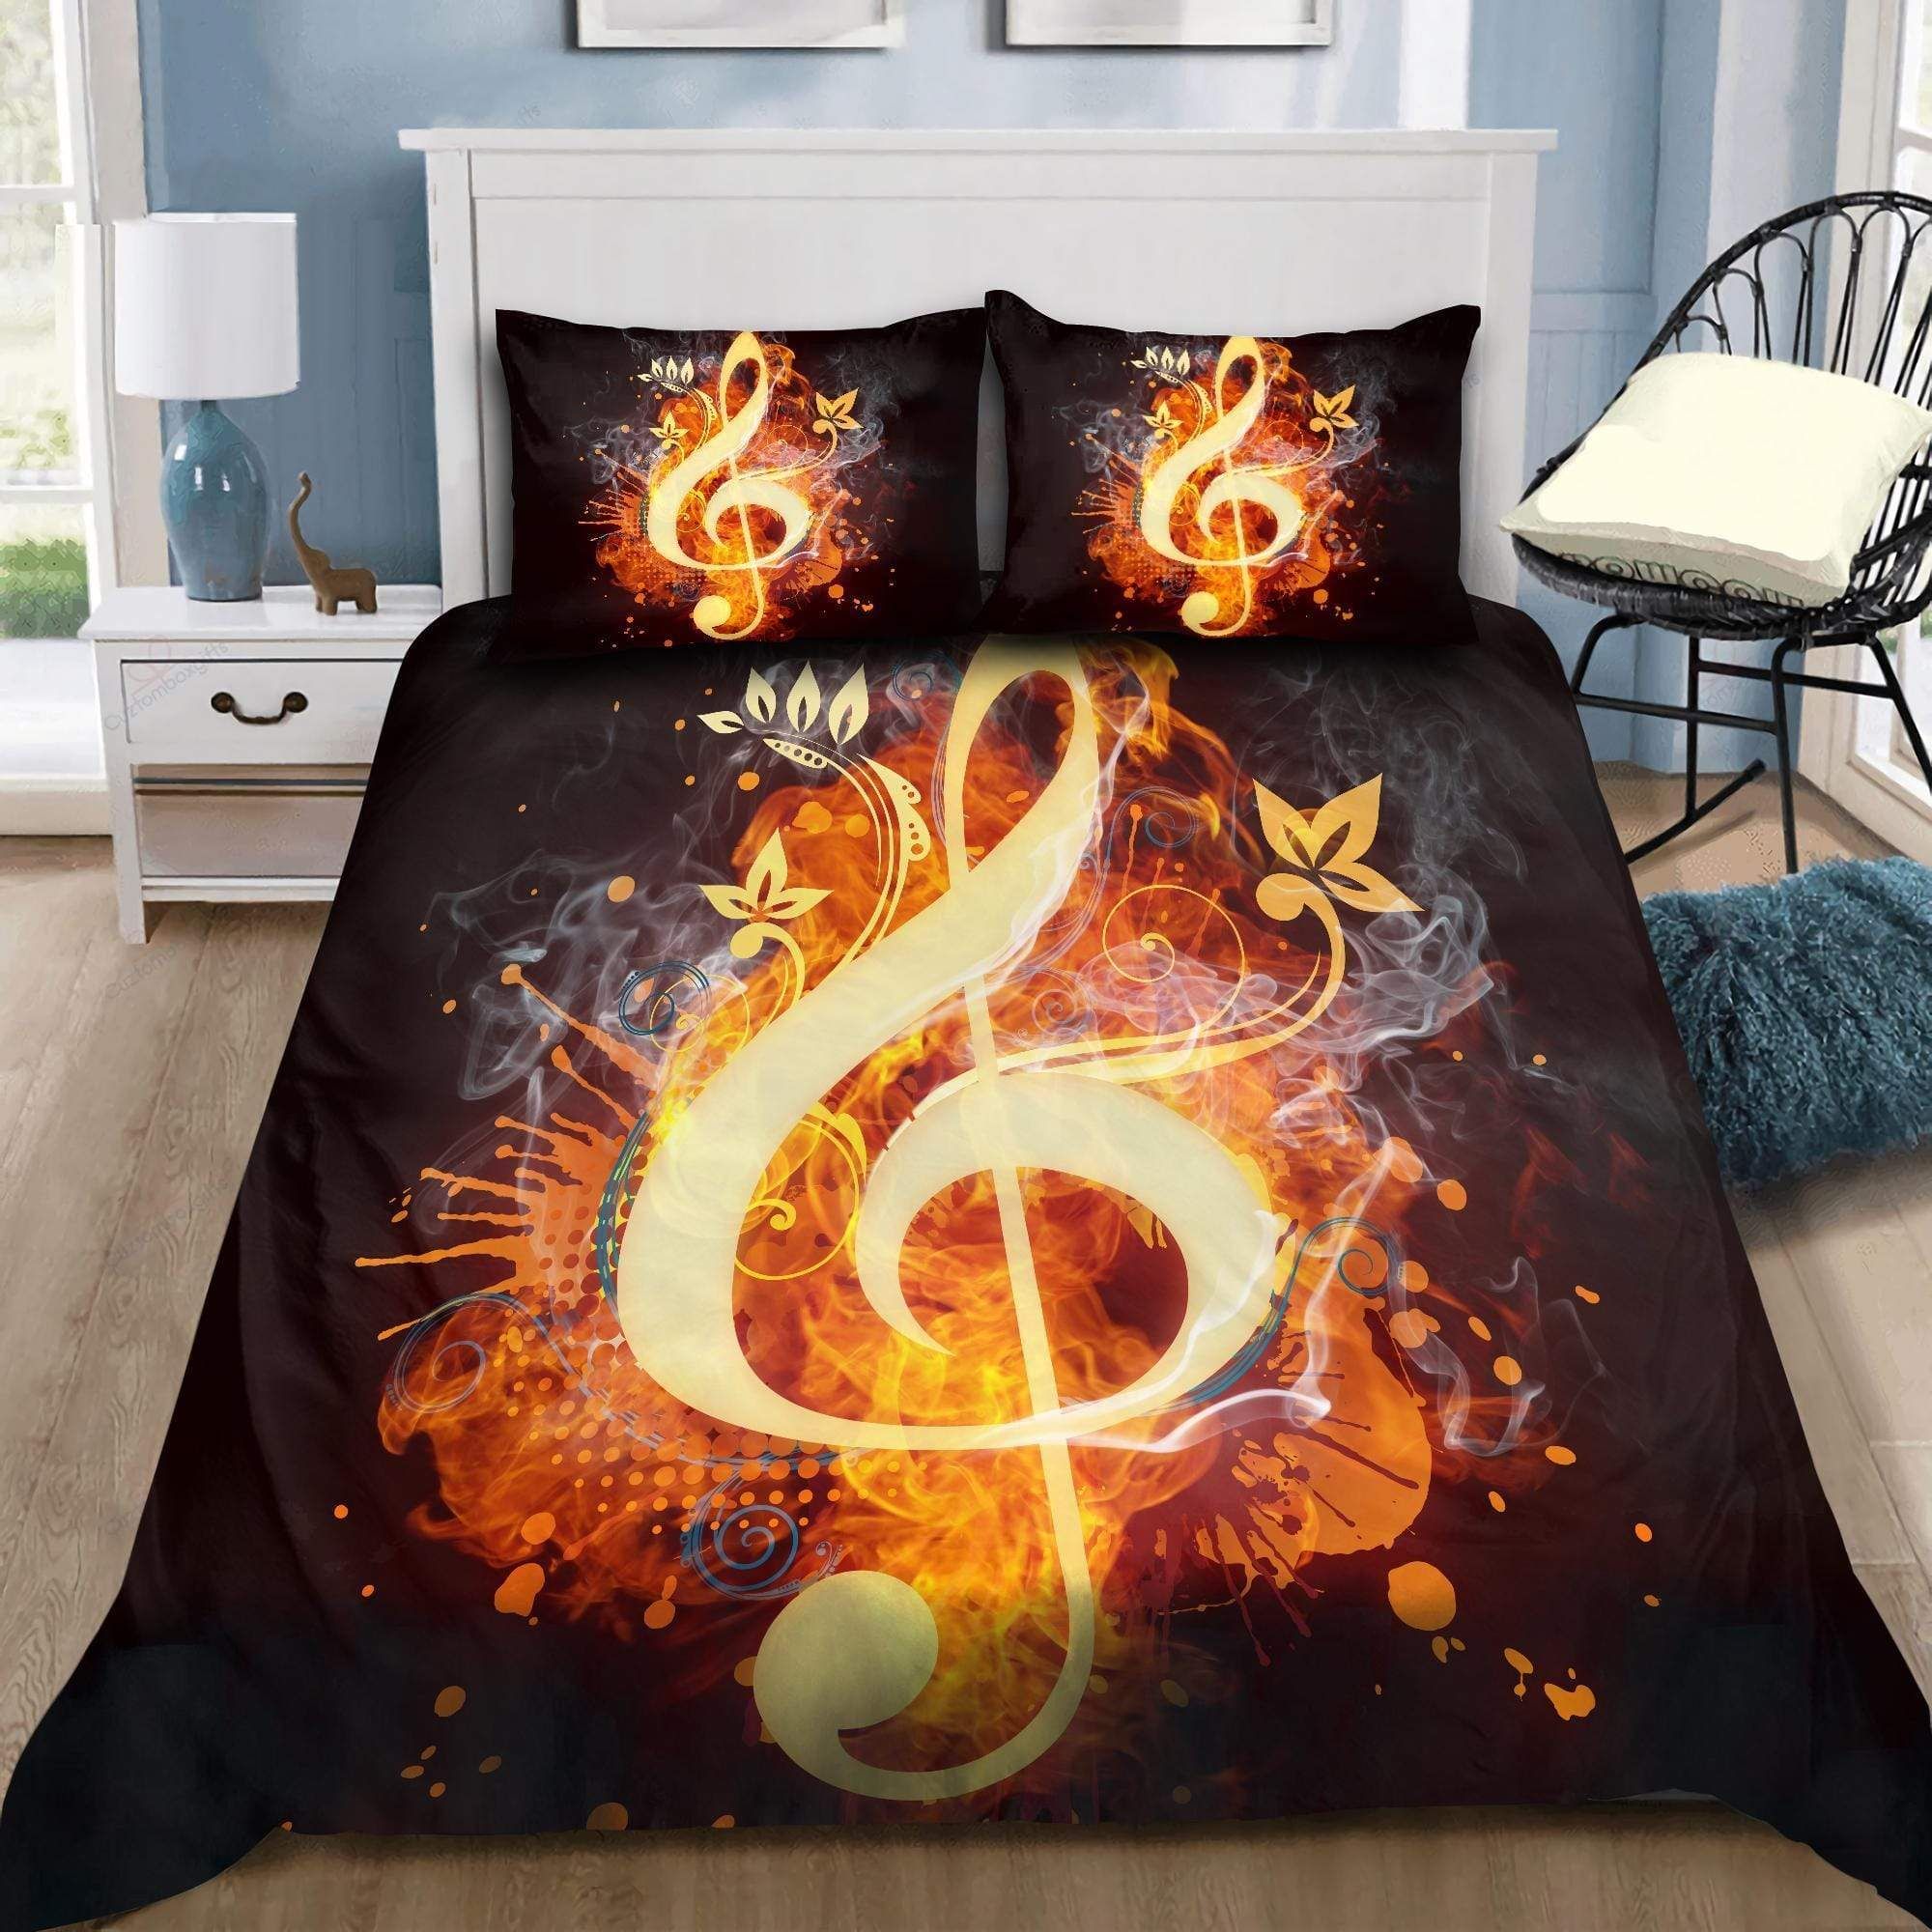 Lovely Music On Fire Bedding Duvet Cover Bedding Set